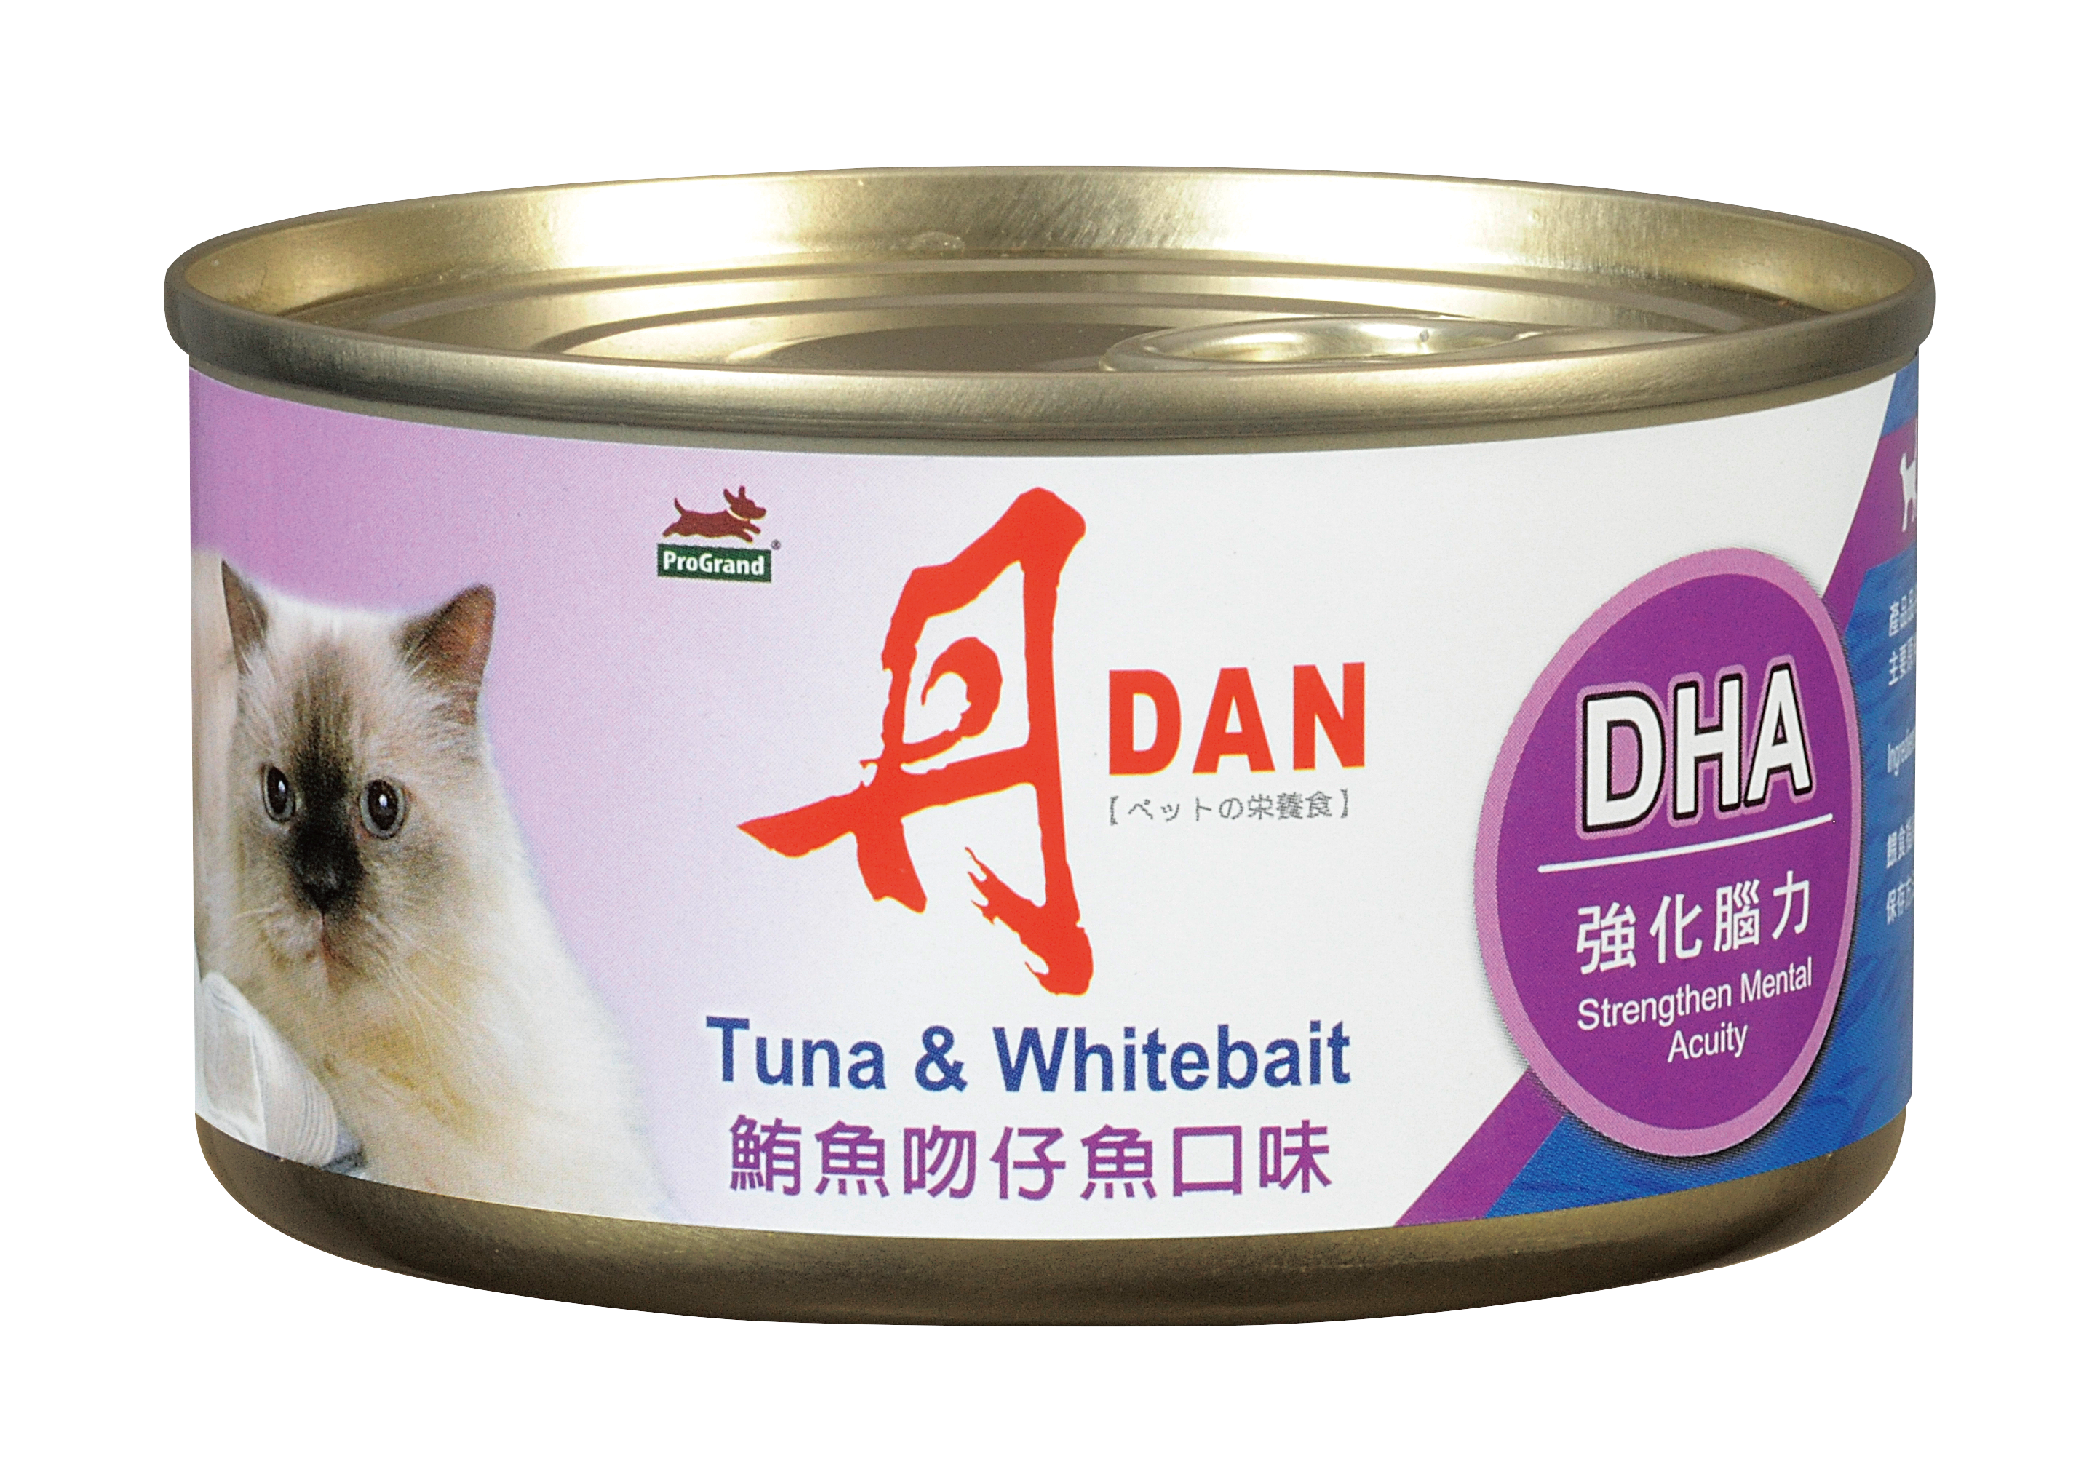 丹DAN 愛貓罐頭鮪魚吻仔魚口味
DAN Canned Cat Food - Tuna&Whitebait Flavor